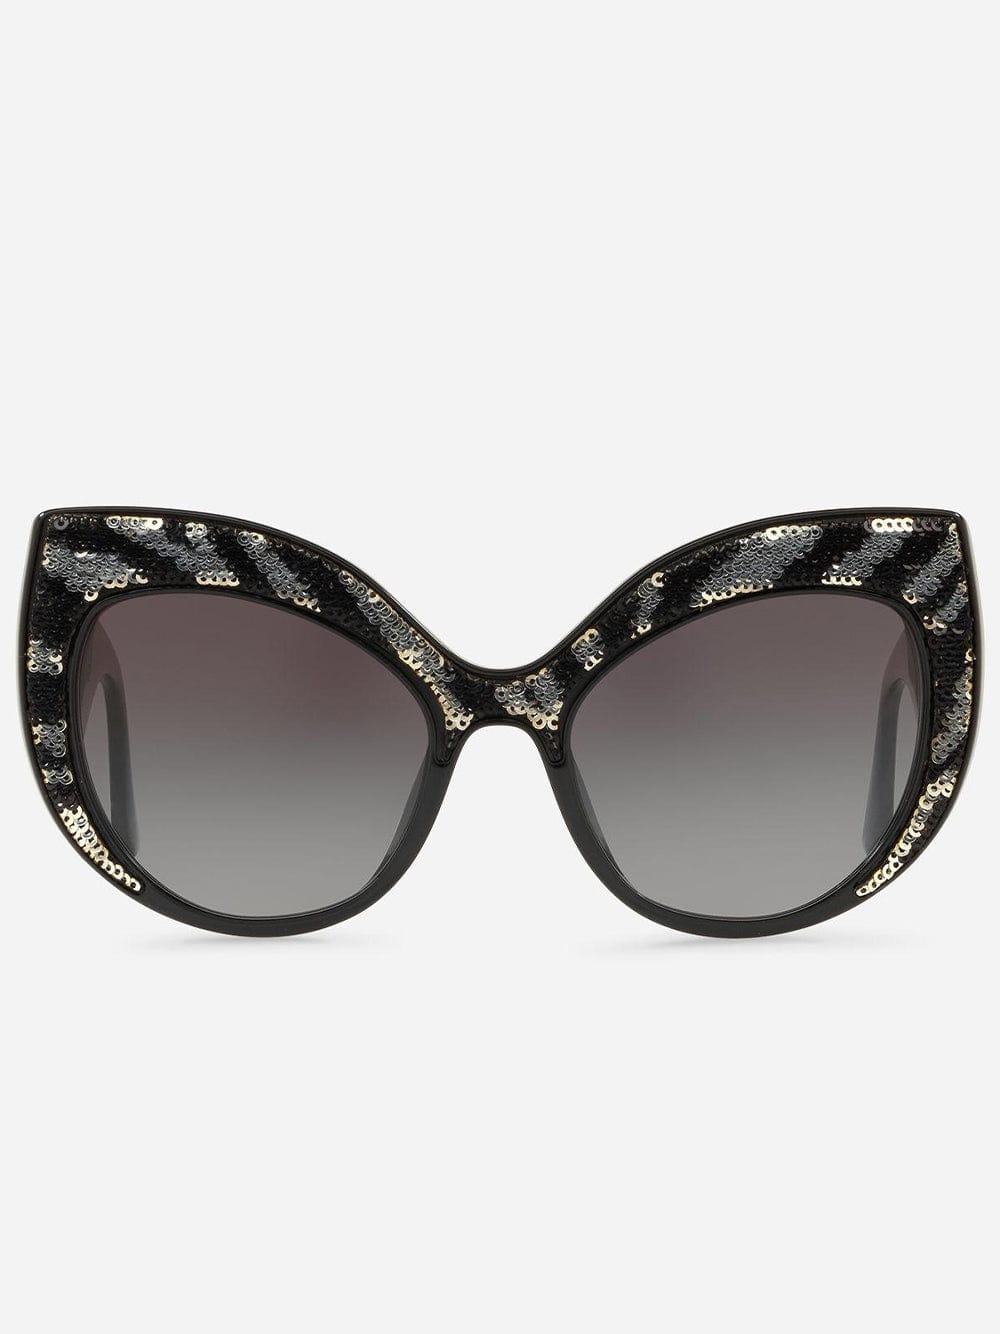 Dolce & Gabbana Shiny Sequin Zebra Sunglasses